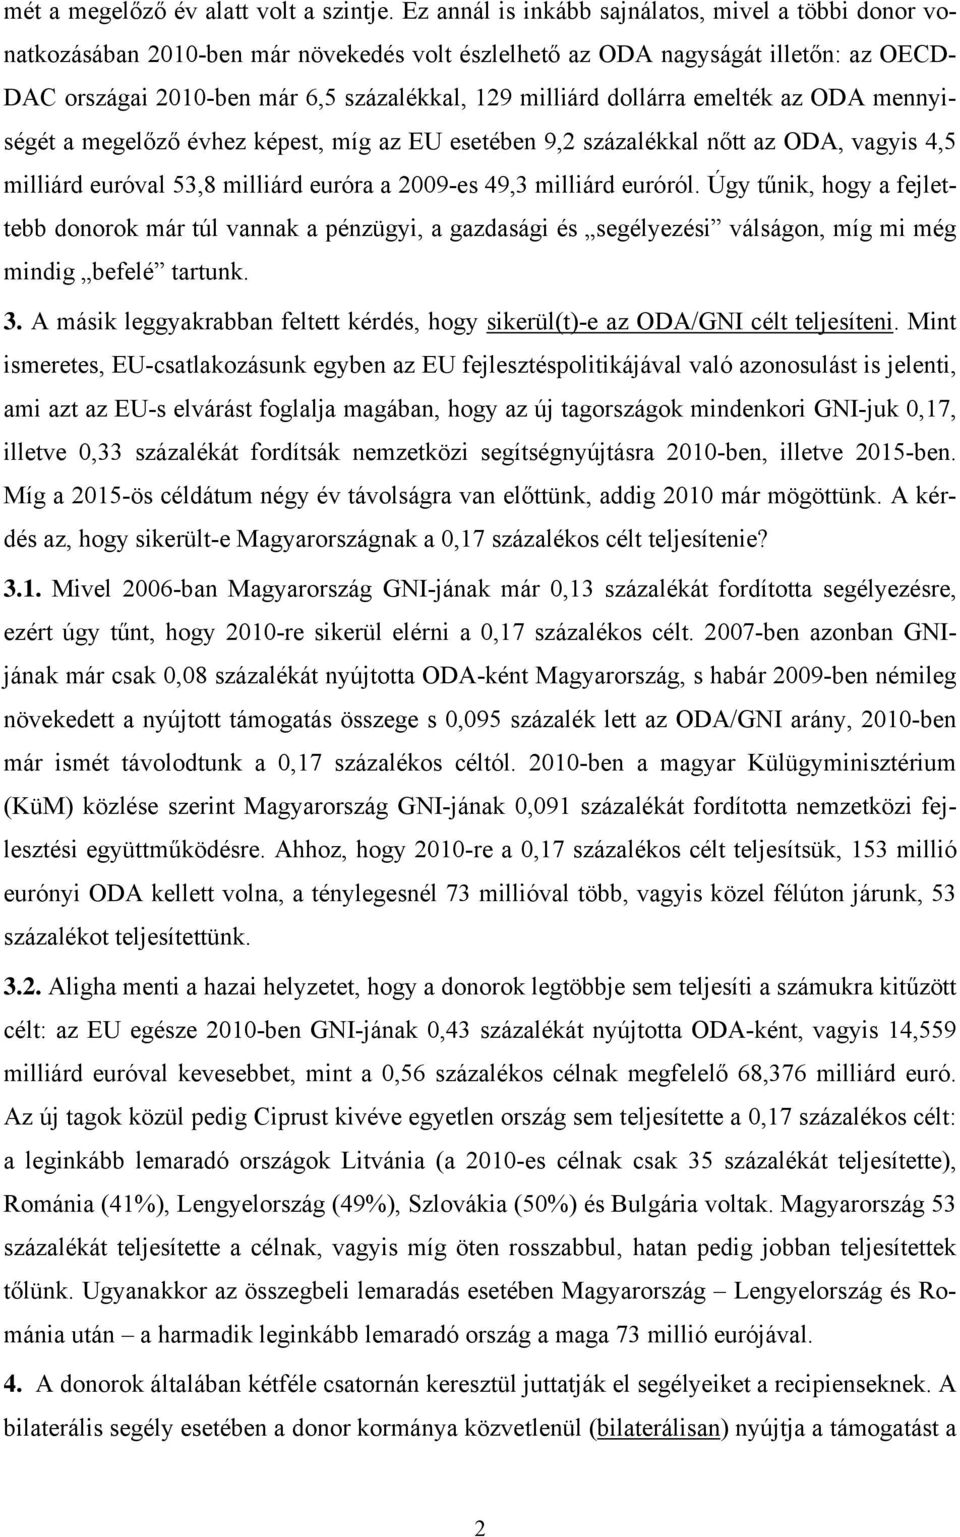 dollárra emelték az ODA mennyiségét a megelőző évhez képest, míg az EU esetében 9,2 százalékkal nőtt az ODA, vagyis 4,5 milliárd euróval 53,8 milliárd euróra a 2009-es 49,3 milliárd euróról.